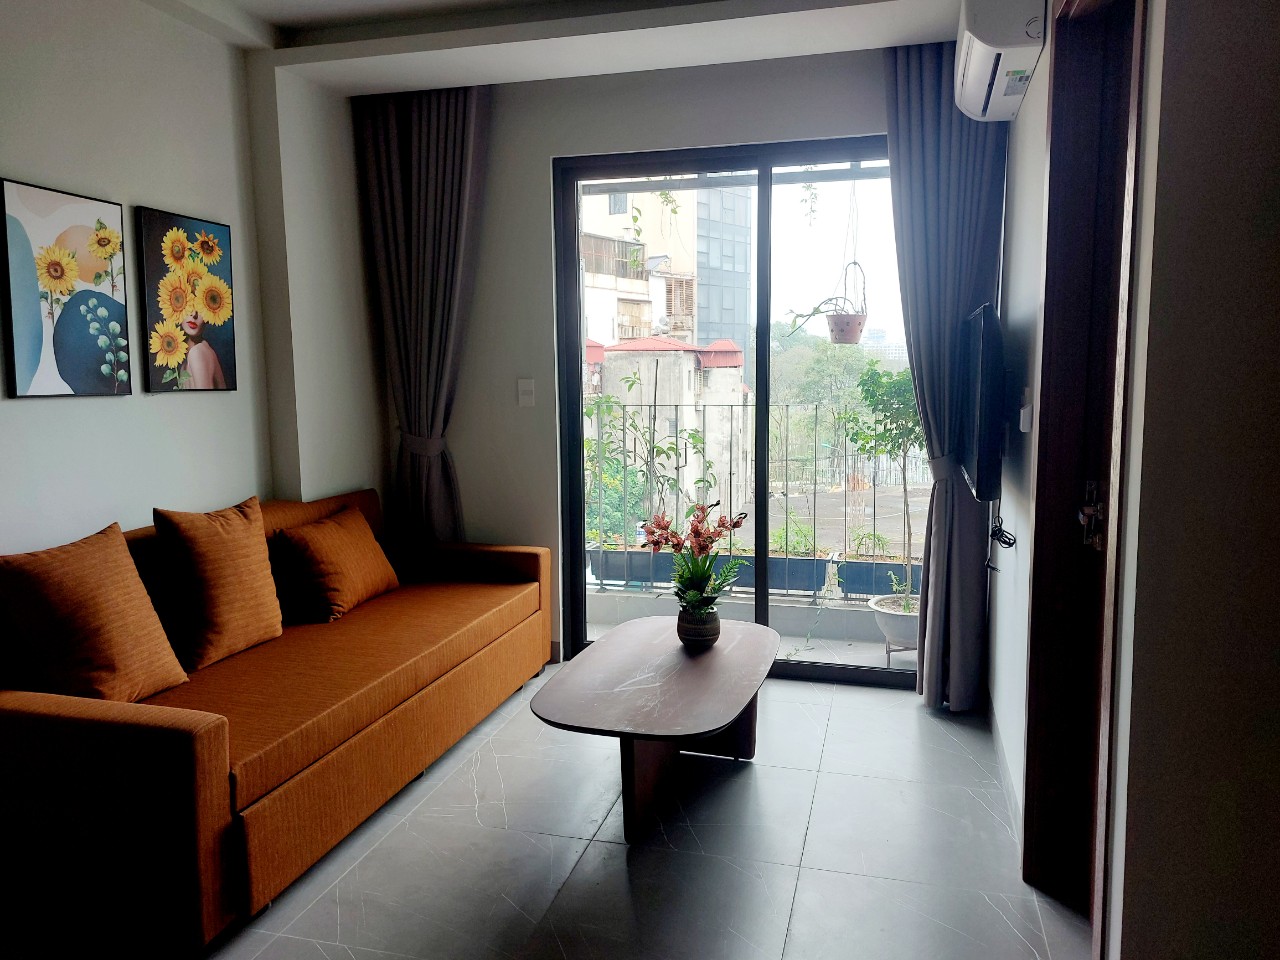 Lotus Apatment cho thuê căn hộ 1 phòng ngủ và 1 phòng khách diện tích 41m2 tại Trúc Bạch, Ba Đình, - Ảnh chính